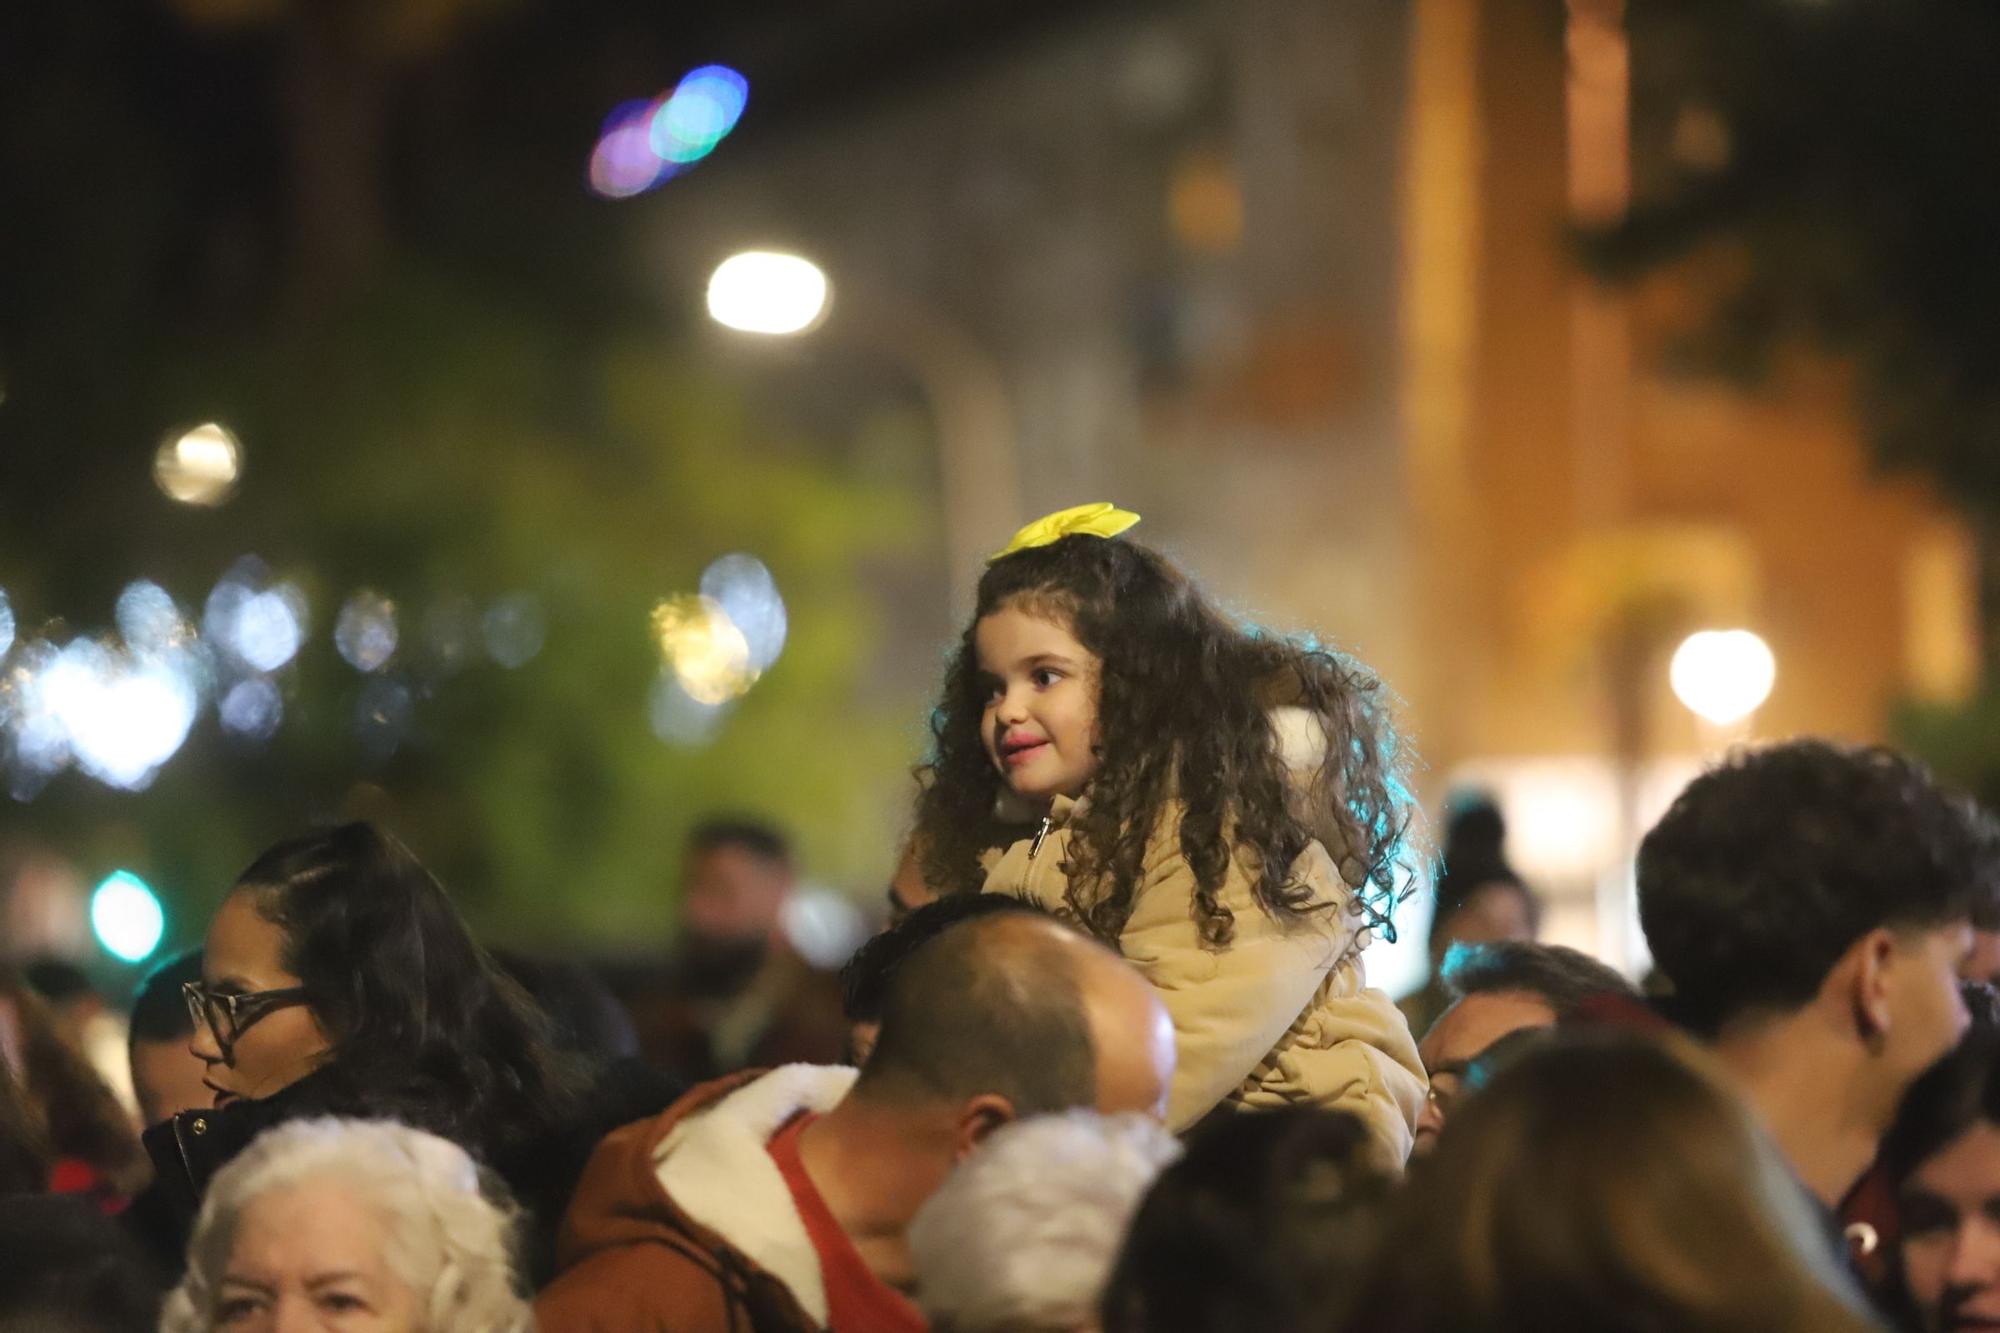 Las Cabalgatas de Reyes Magos de los barrios, en imágenes.